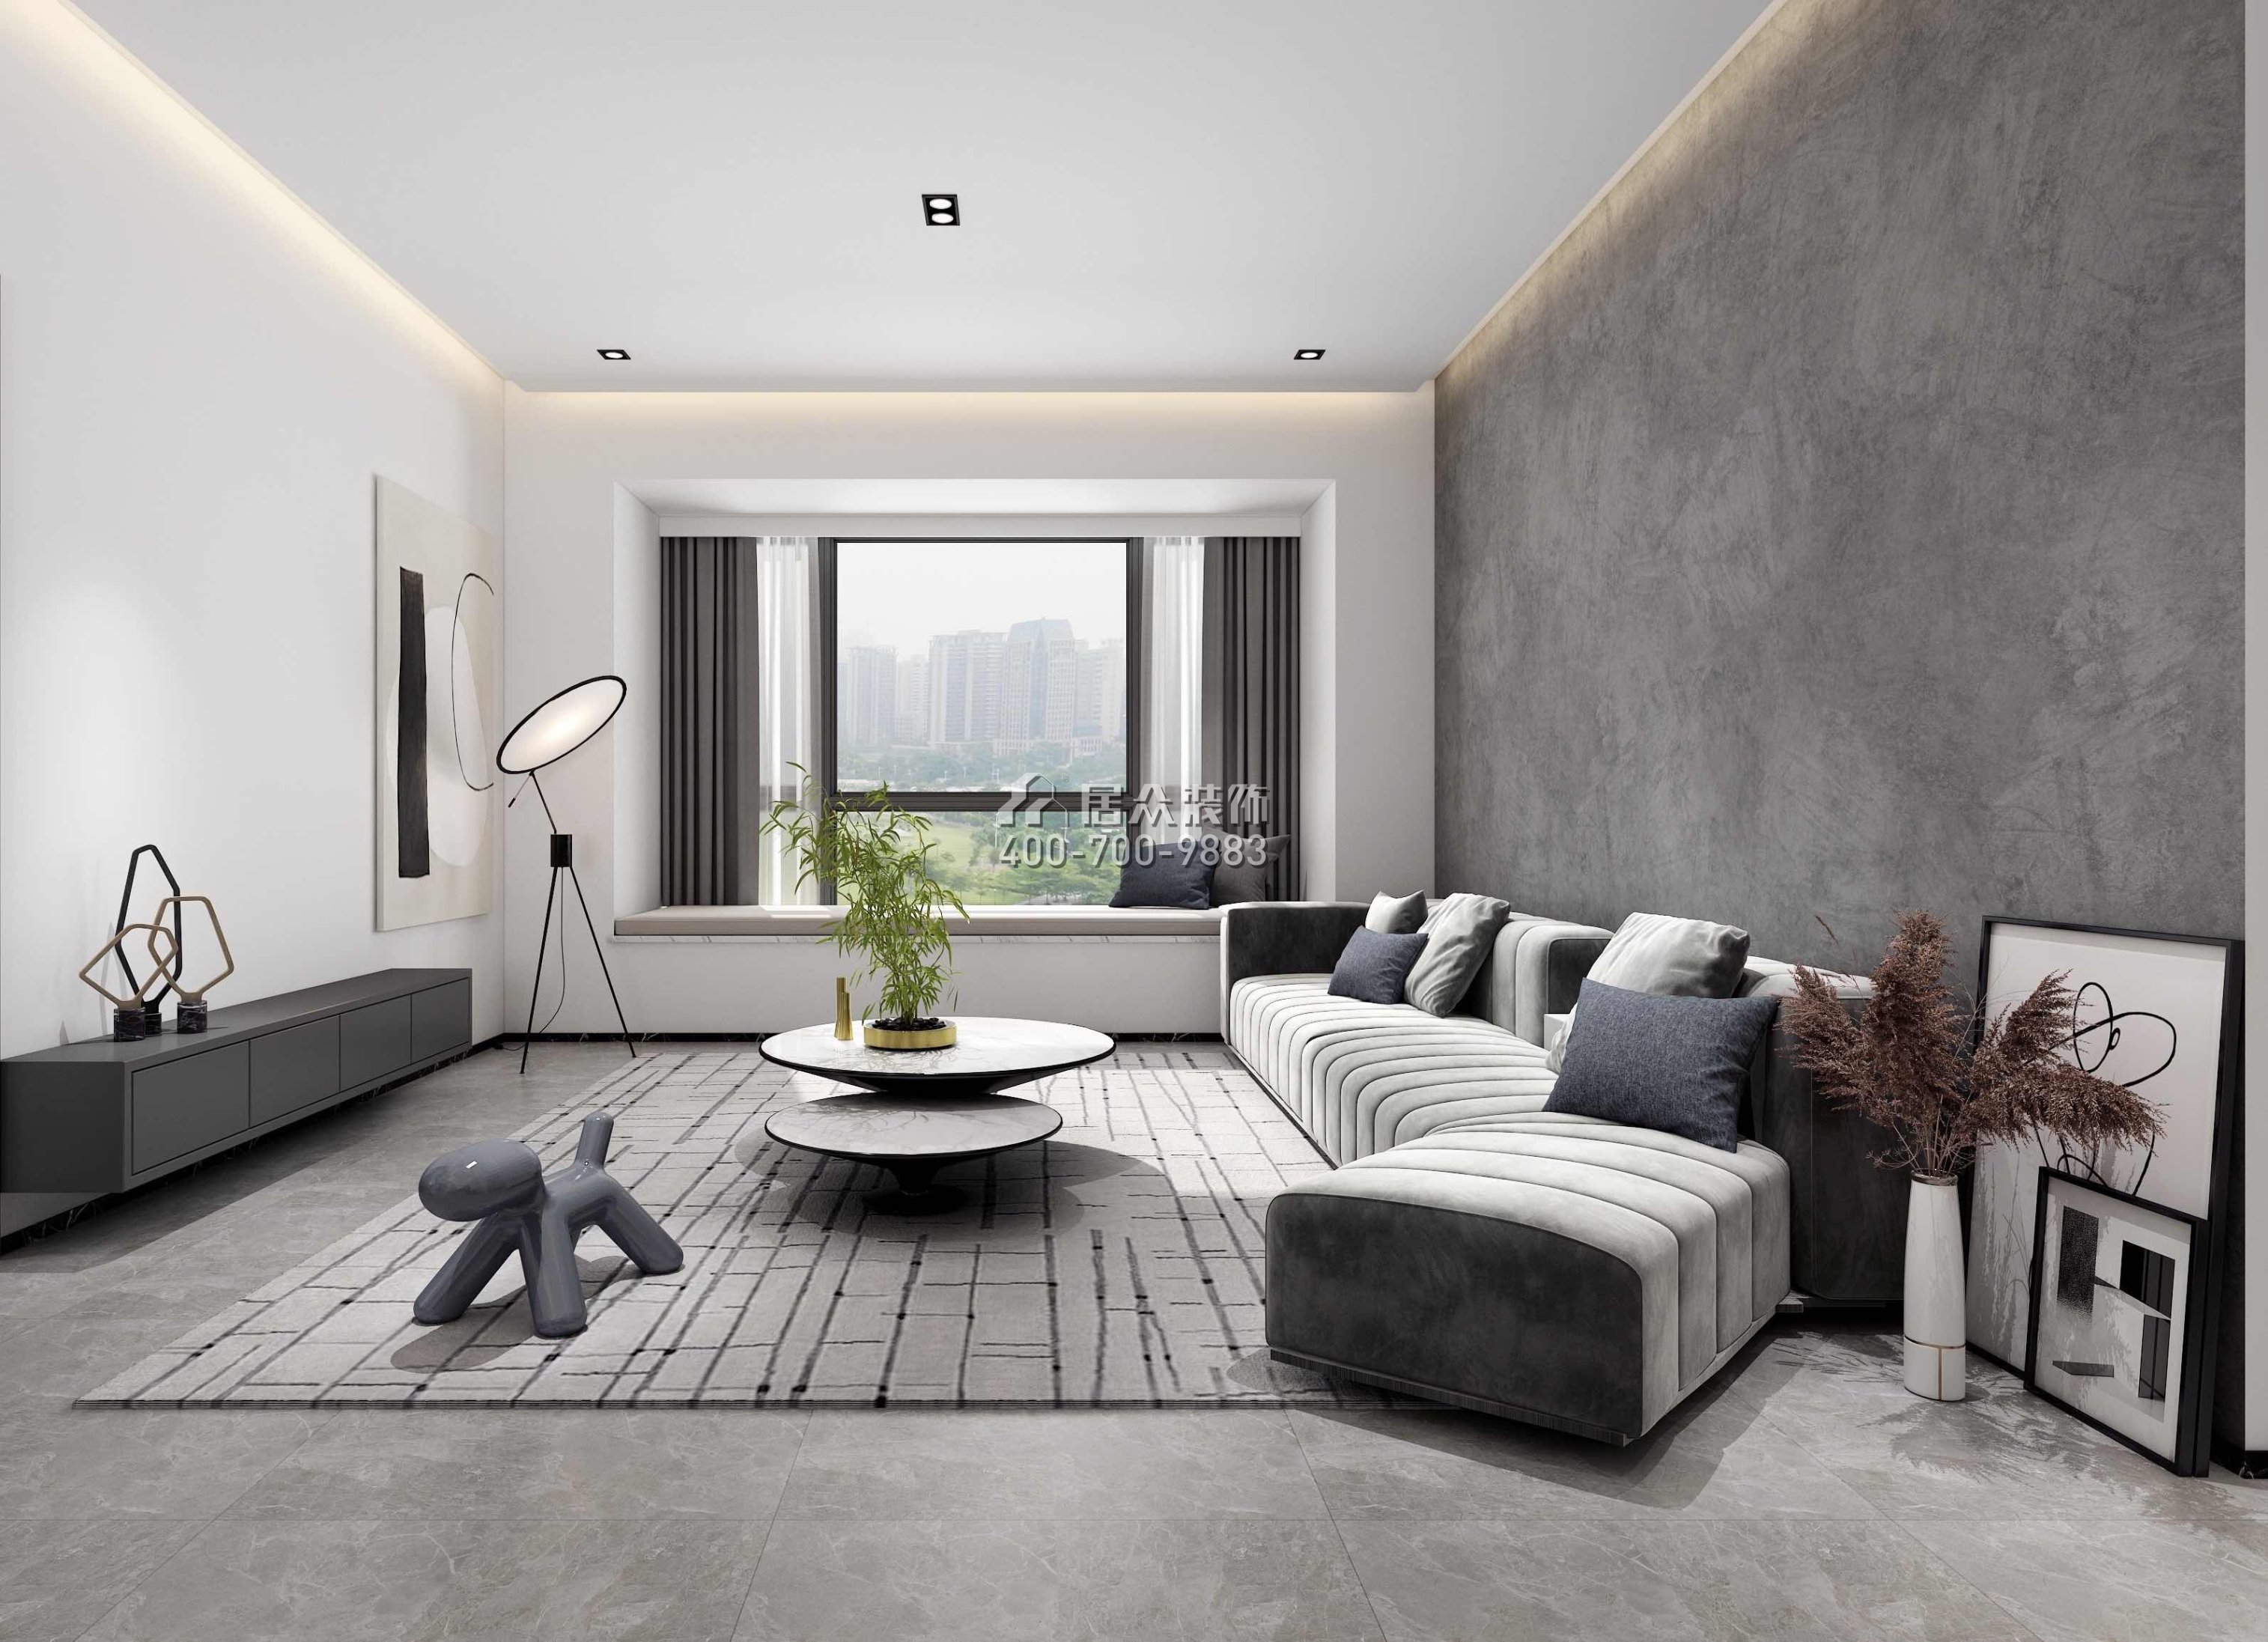 豪方天際156平方米現代簡約風格平層戶型客廳裝修效果圖